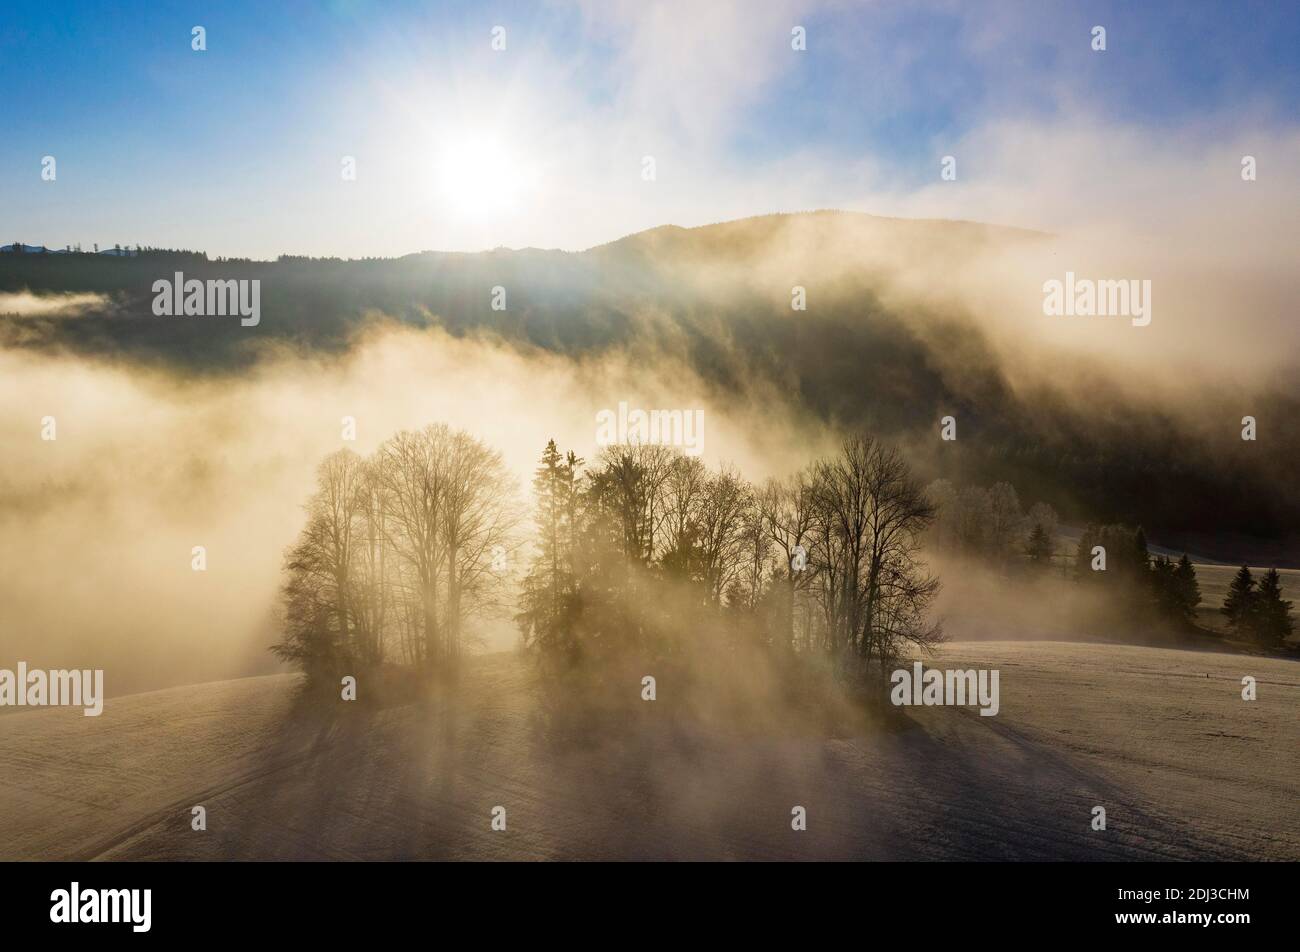 Gruppo di alberi che si innalzano dal mare di nebbia, tempo di inversione, colpo di drone, vista aerea, Mondseeland, Salzkammergut, Austria superiore, Austria Foto Stock